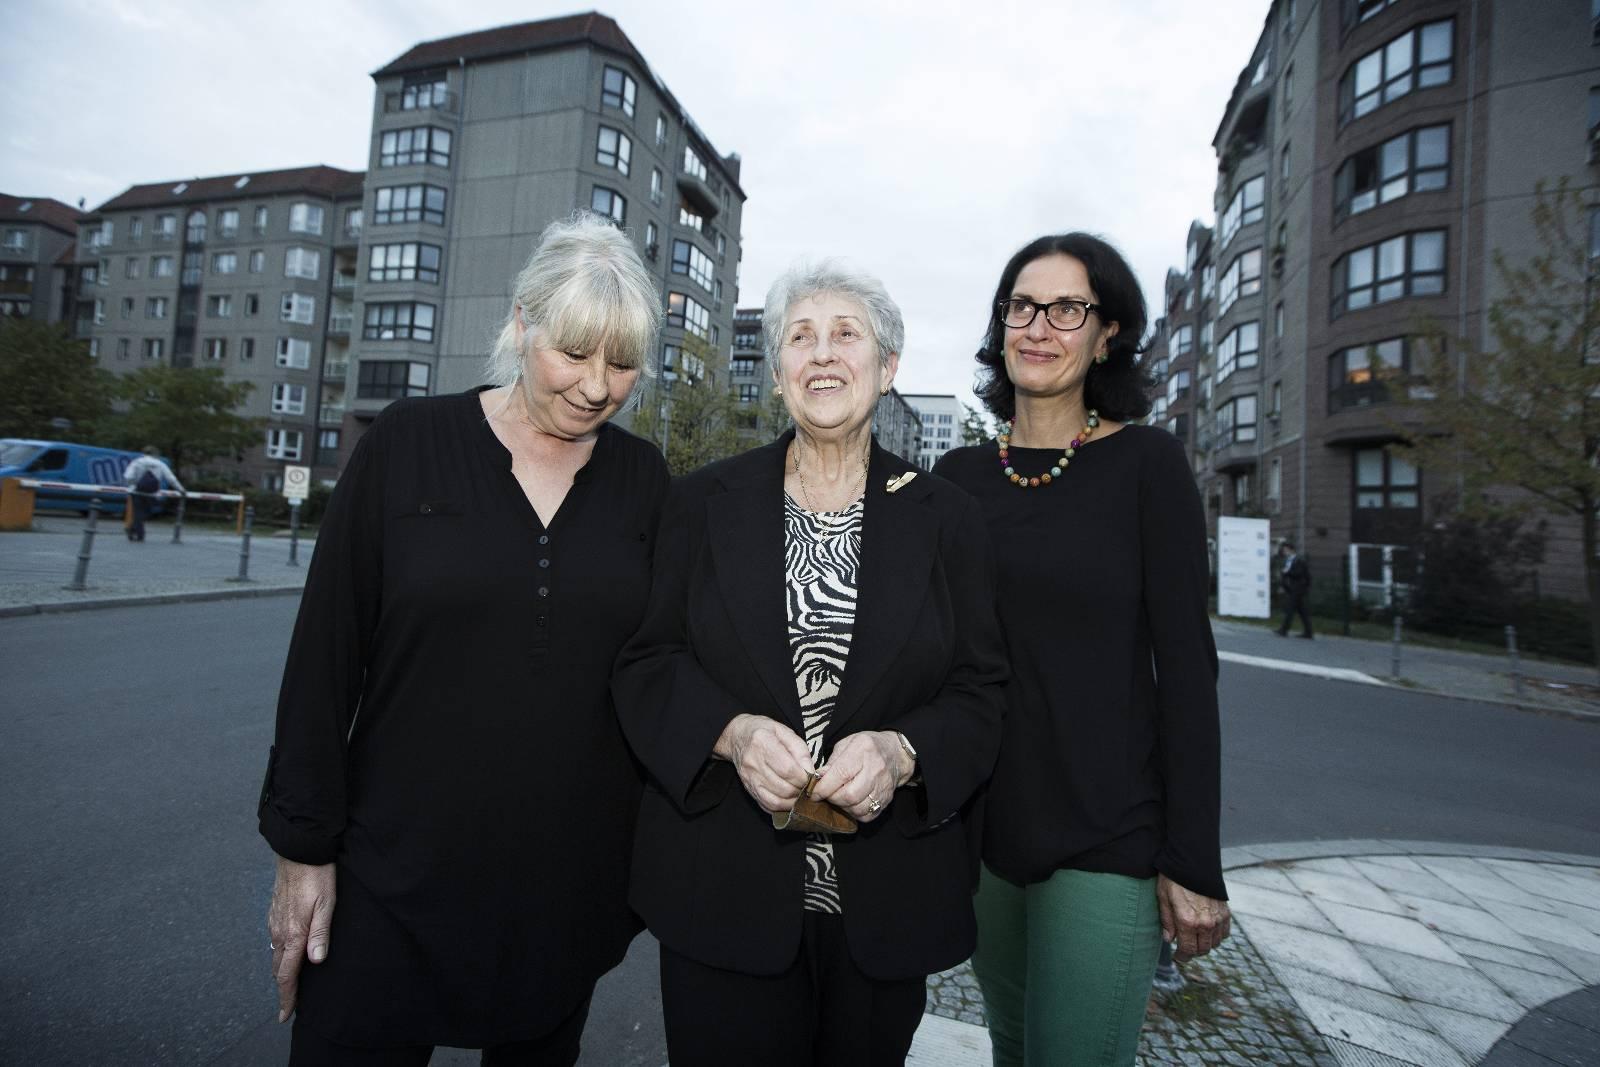 Irene Kwast, Edith Keisewetter-Giese og Helke Peisker bor fortsatt i øst. De synes det er vanskelig å feire Murens fall, for de føler de mistet mye i overgangen, selv om de ikke savner begrensningene fra DDR-regimet. 